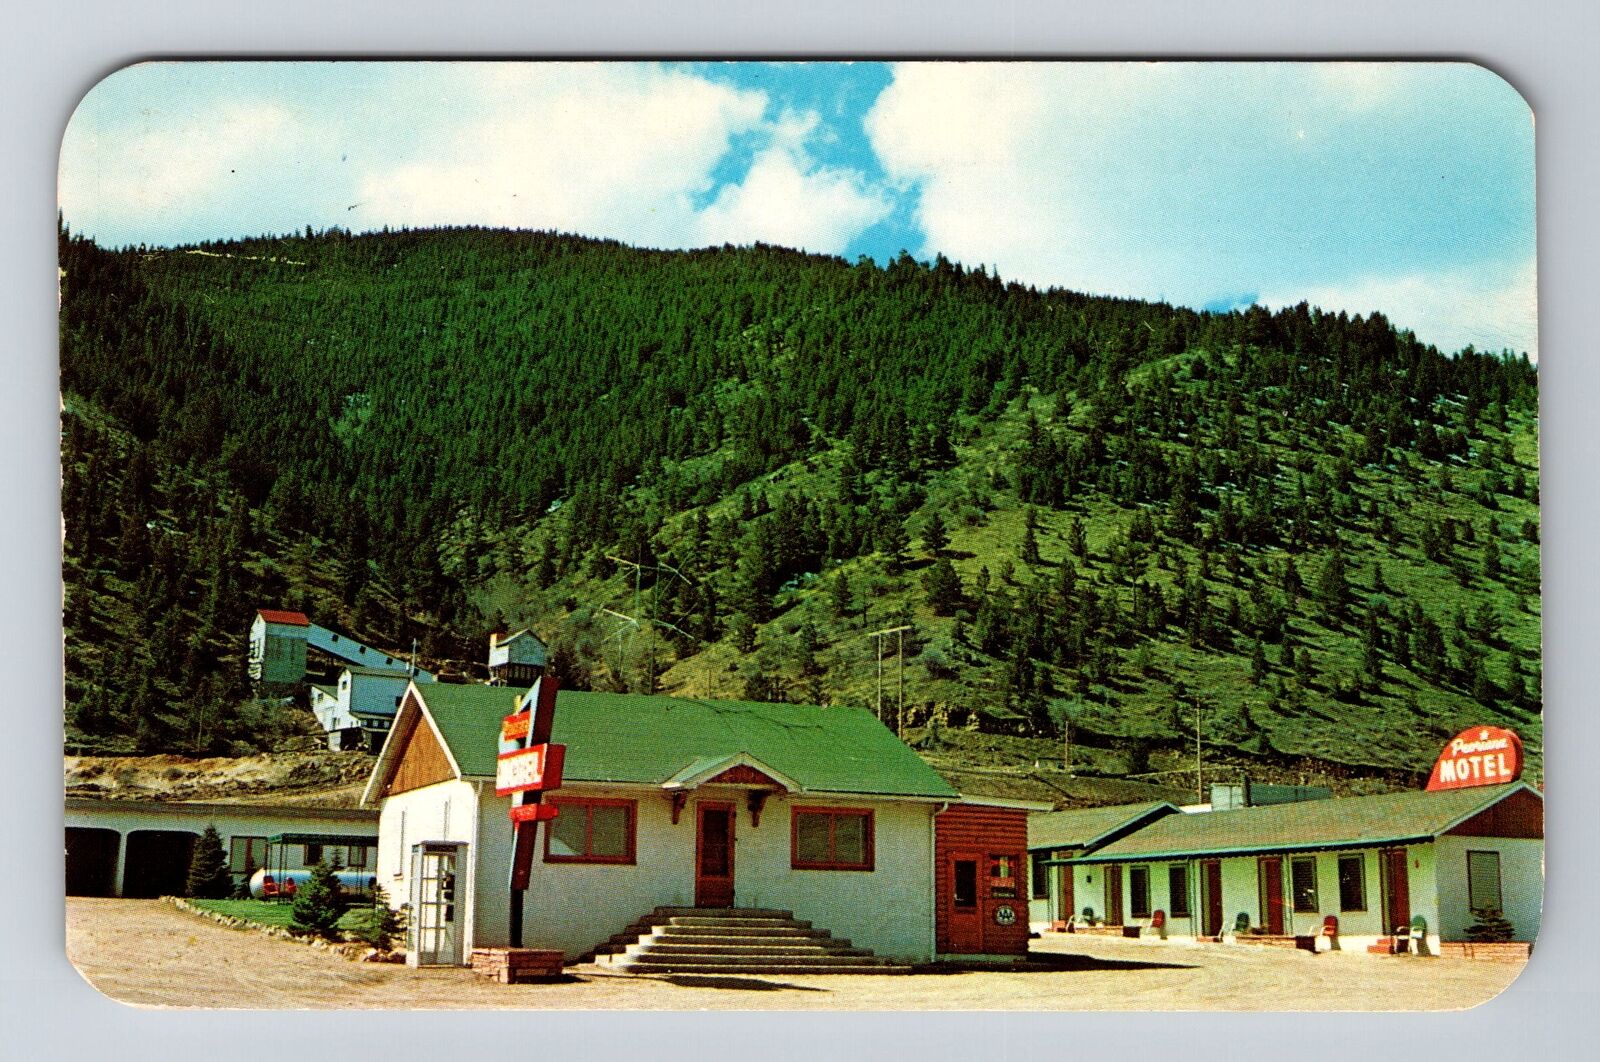 Idaho Springs CO-Colorado Peoriana Motel Antique c1960 Vintage Souvenir Postcard